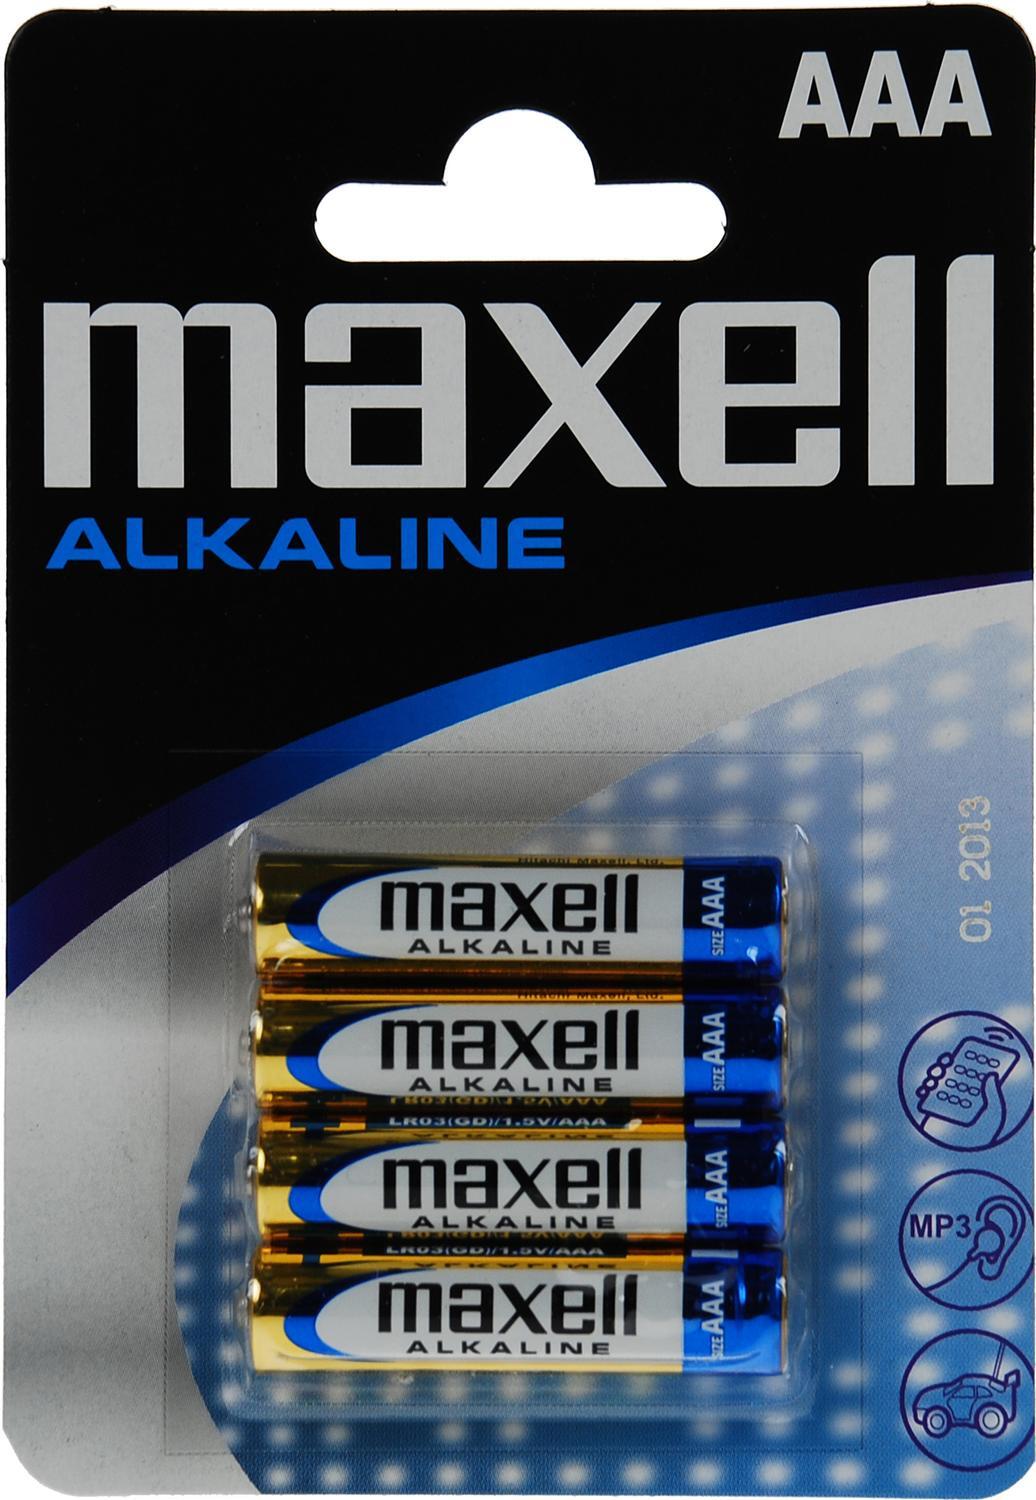 Maxell-batterier, AAA (LR03), Alkaline, 1,5V, 4-pakning - Elkjøp